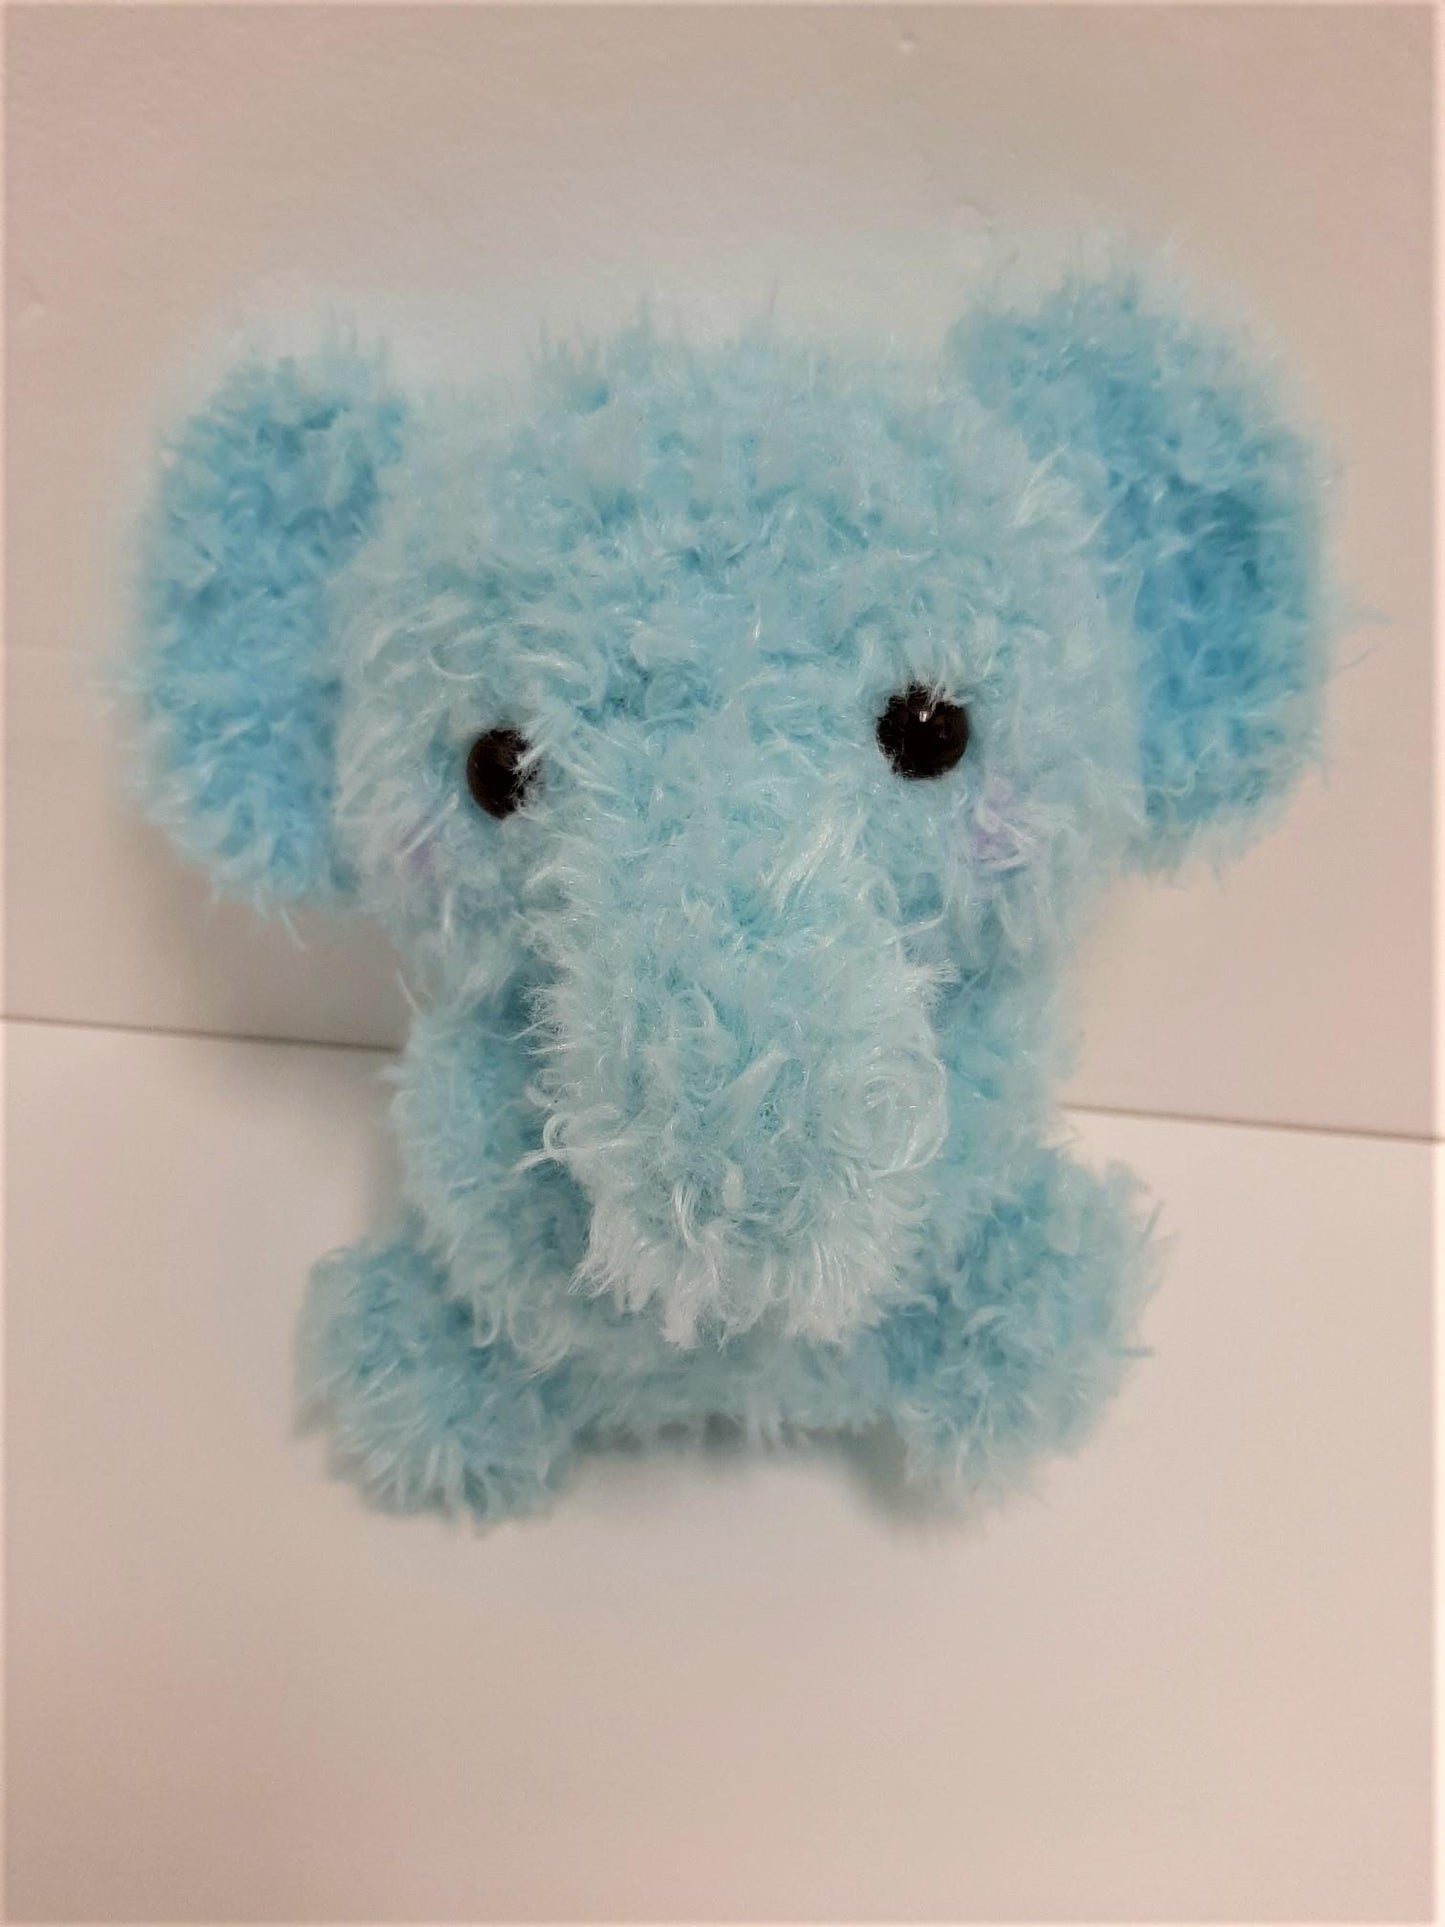 Amuse: Fuzzy Elephant 5" Plush